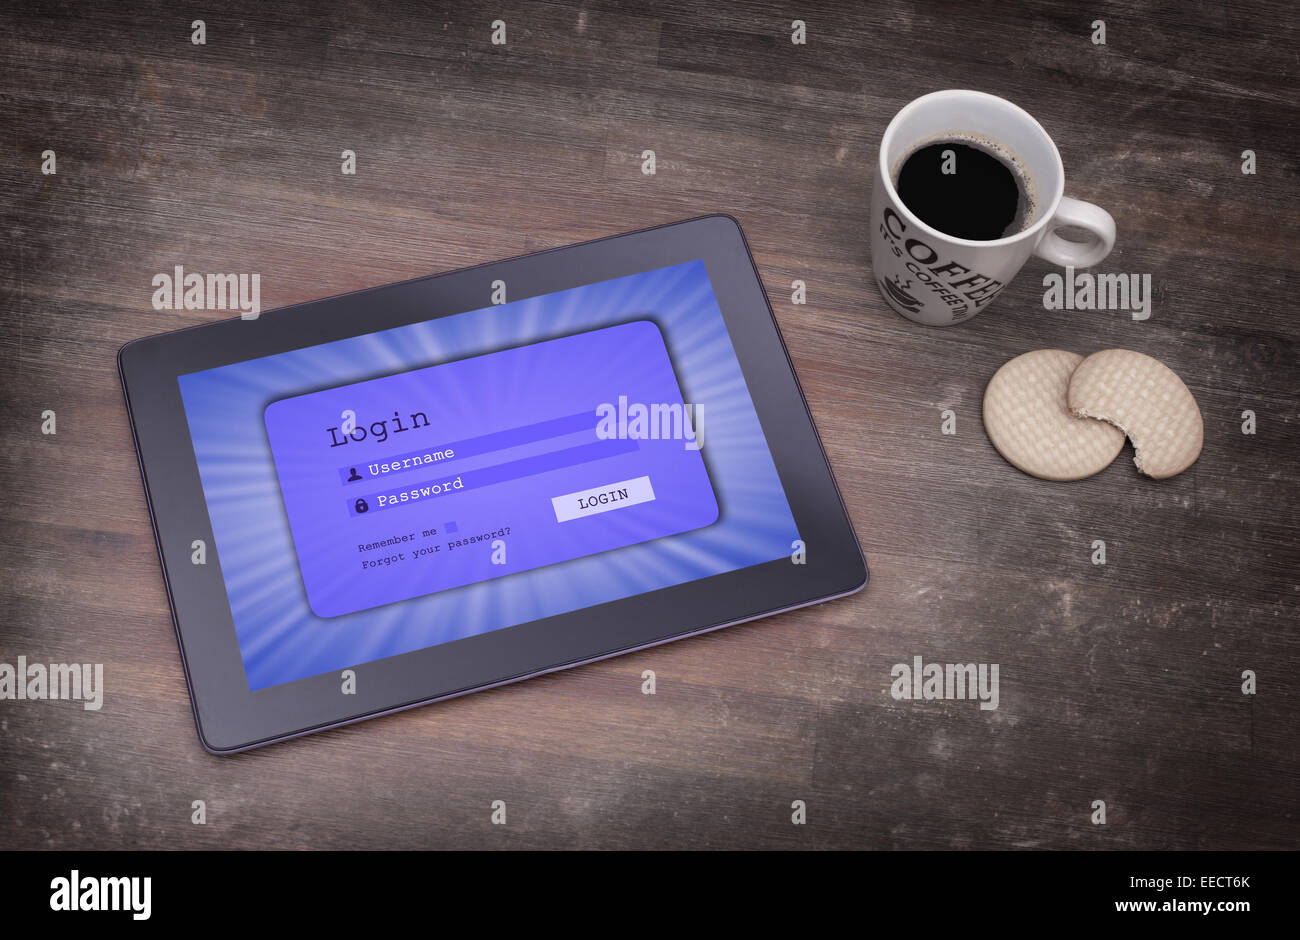 Login-Schnittstelle auf Tablet - Benutzernamen und das Kennwort, blau Stockfoto